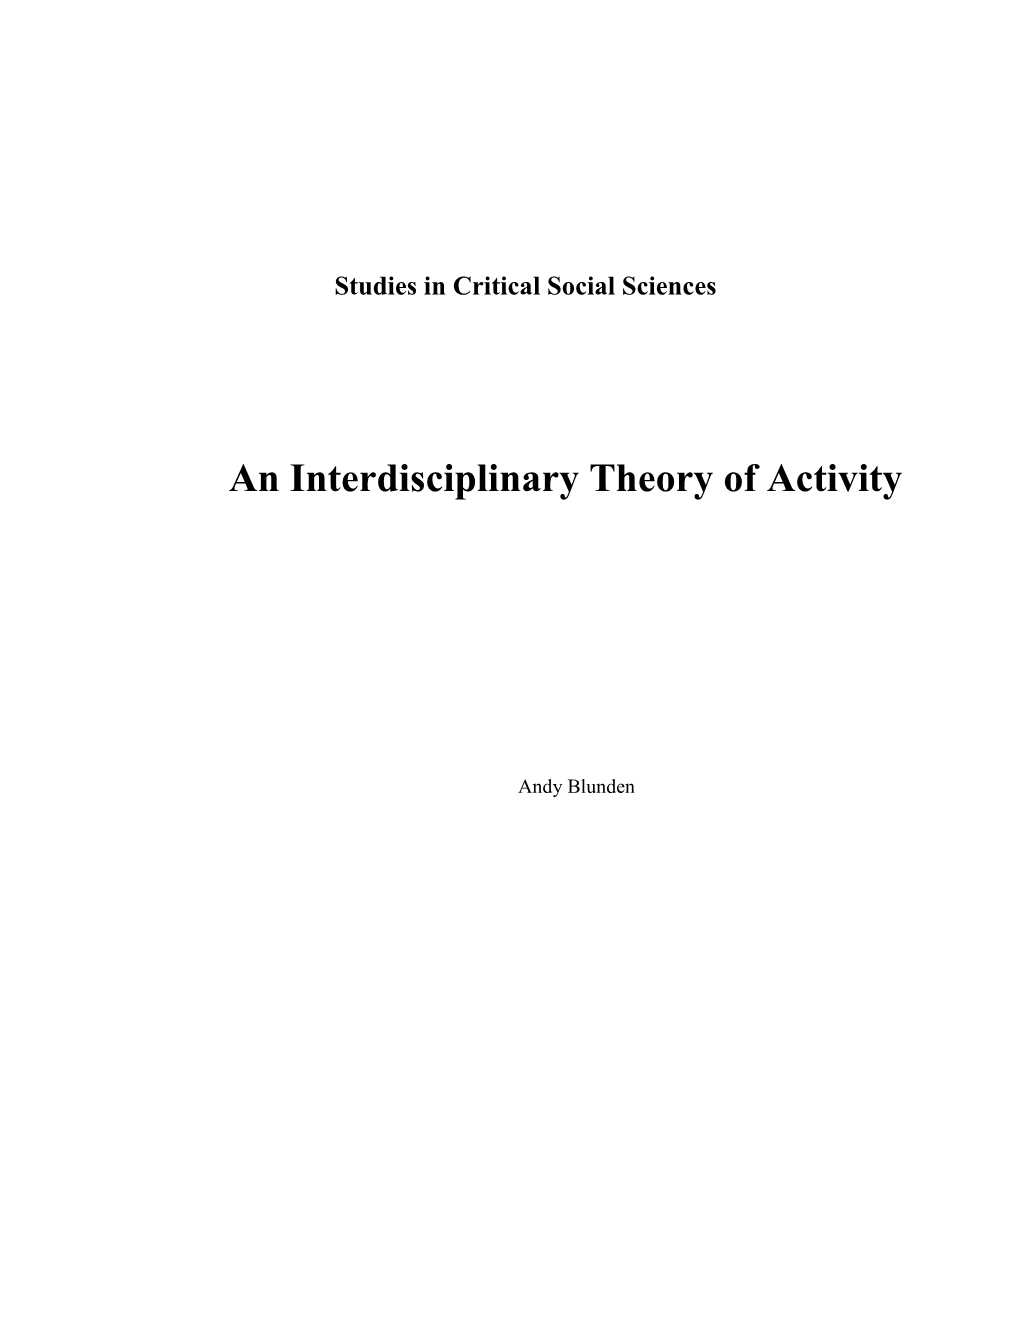 An Interdisciplinary Theory of Activity